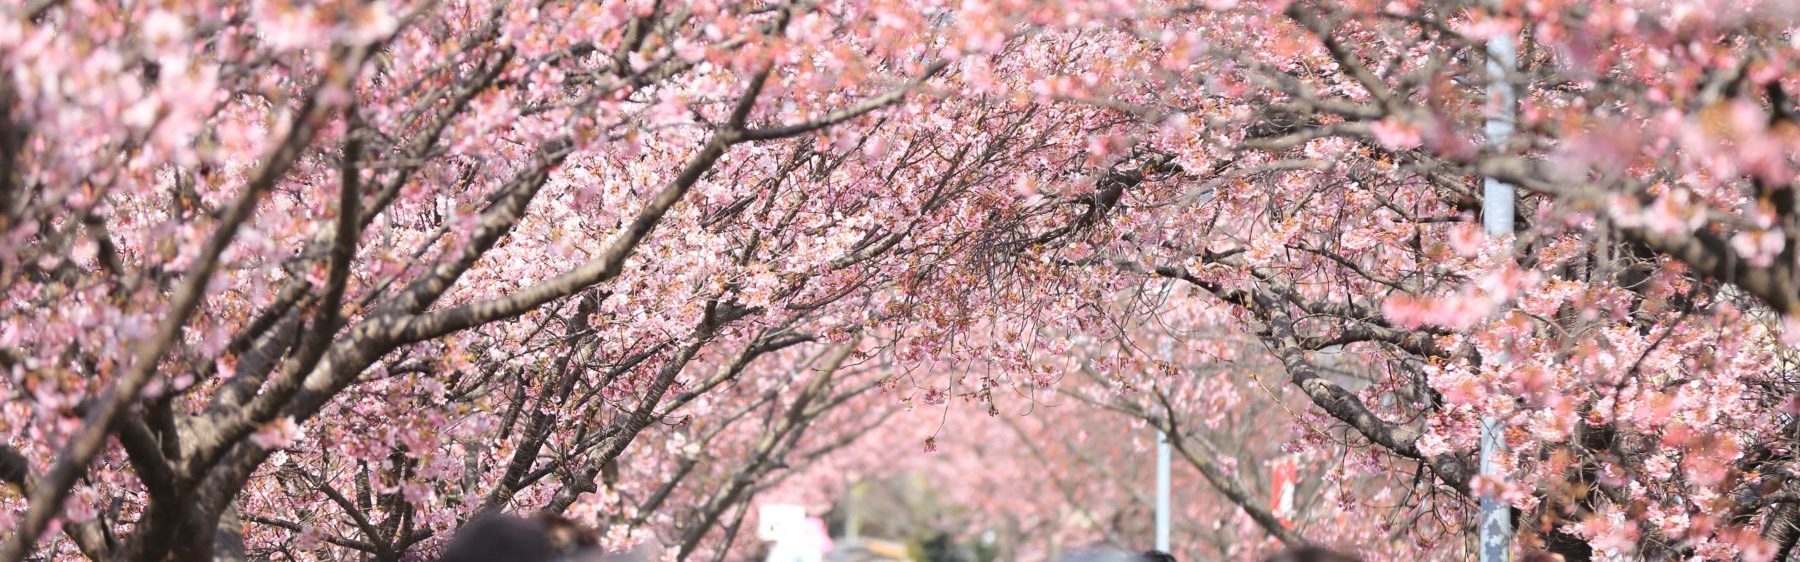 Die Kirschblüte im Mai